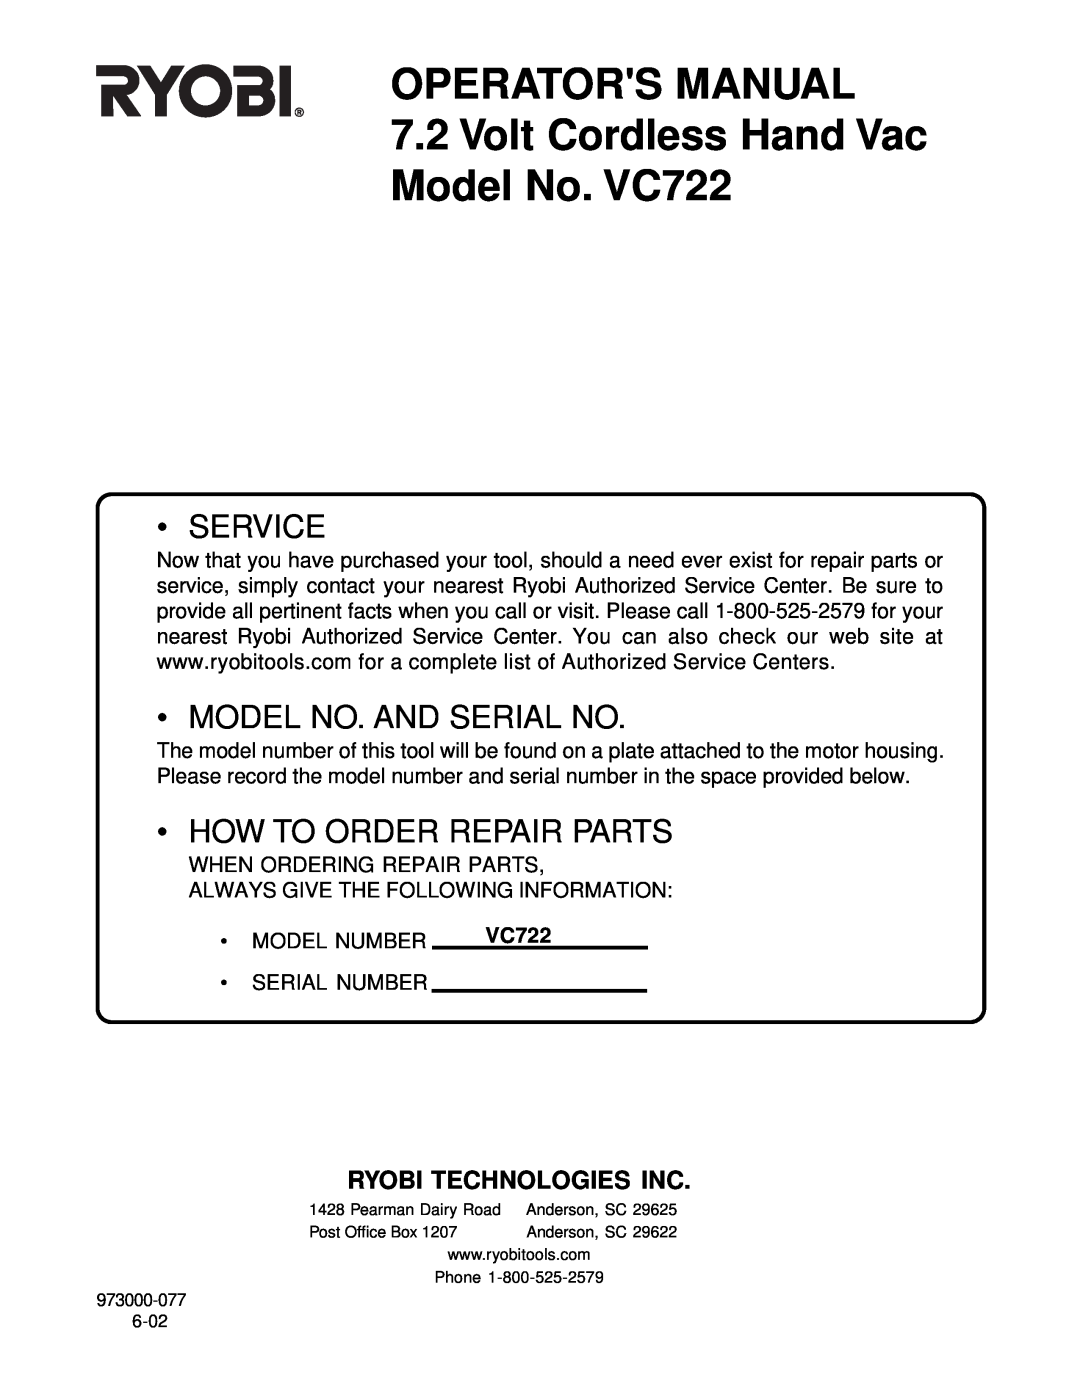 Ryobi manual Operators Manual, 7.2Volt Cordless Hand Vac Model No. VC722, Service, Model No. And Serial No 